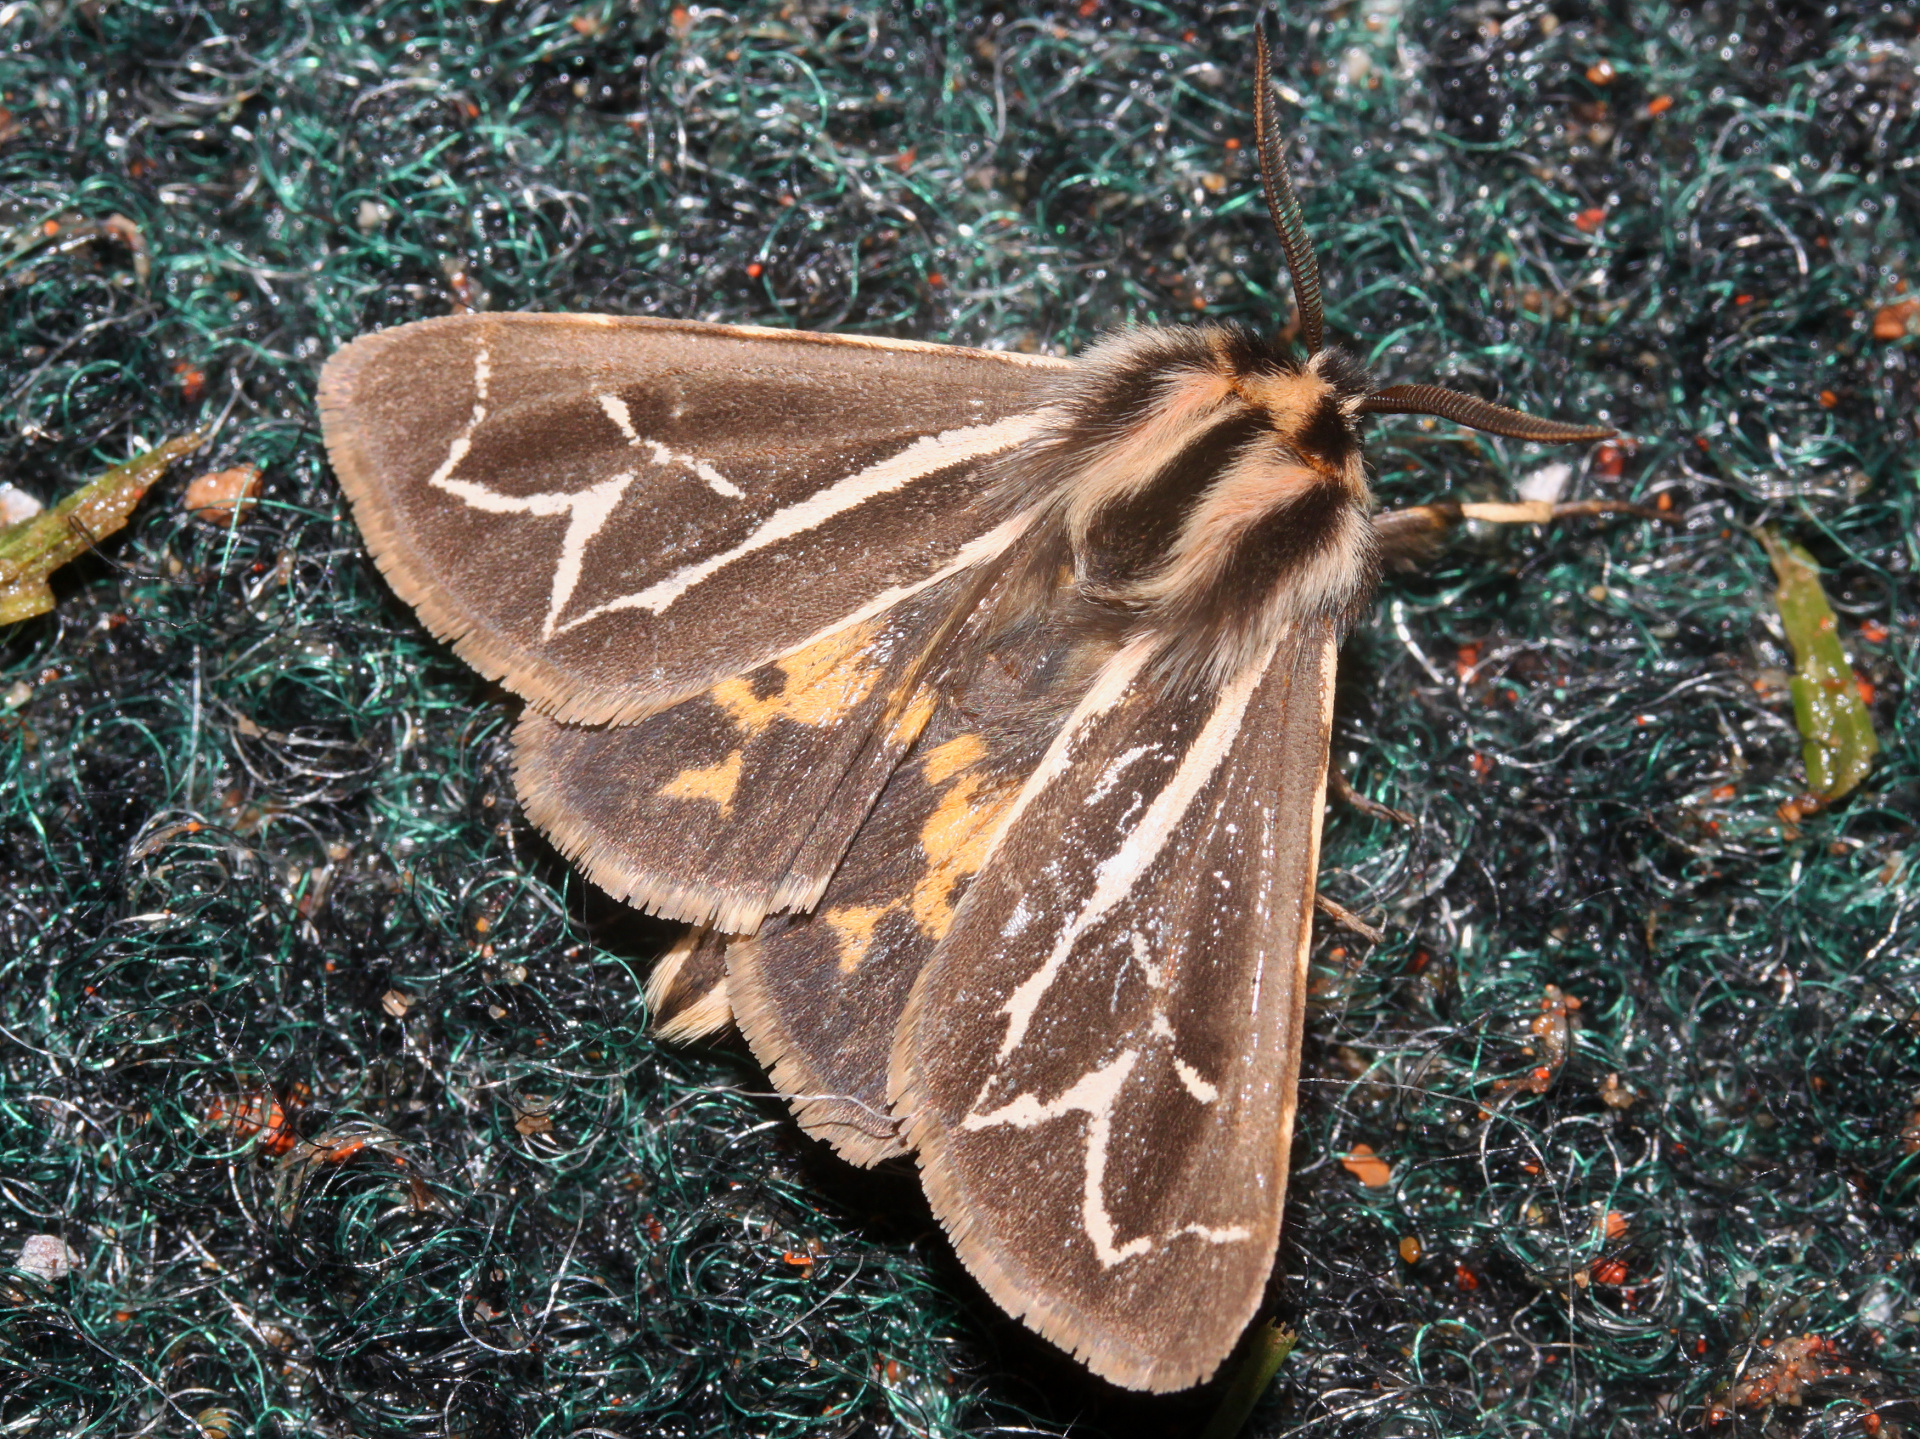 Grammia williamsii (Podróże » USA: Drogi nie obrane » Zwierzęta » Owady » Motyle i ćmy » Arctiidae)